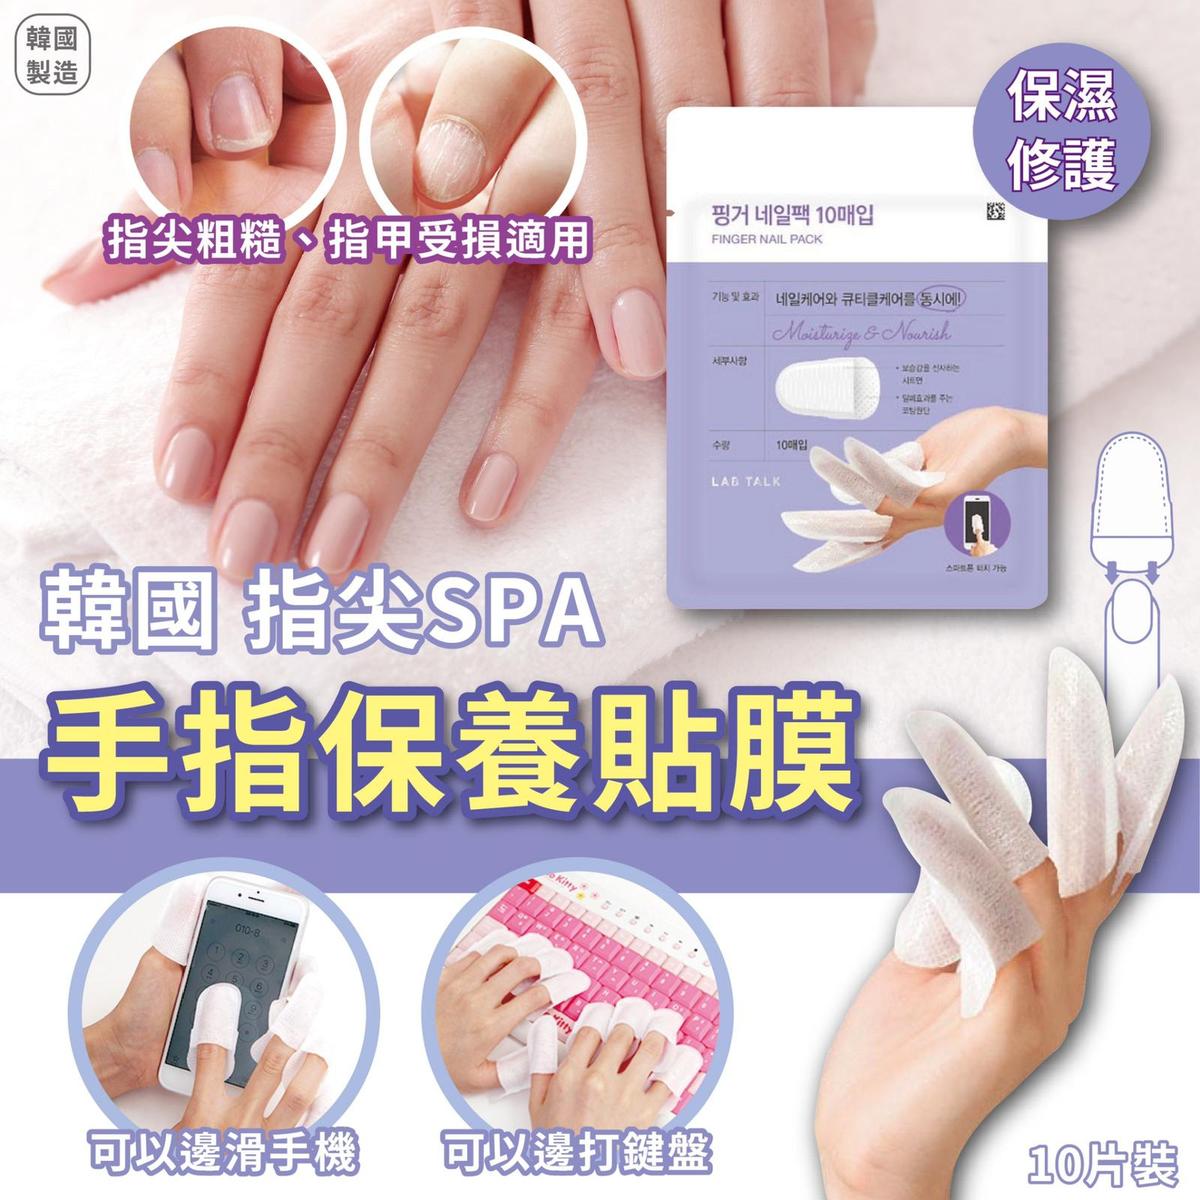 韓國製造 指尖SPA手指保養貼膜 (1套2包, 每包10片)